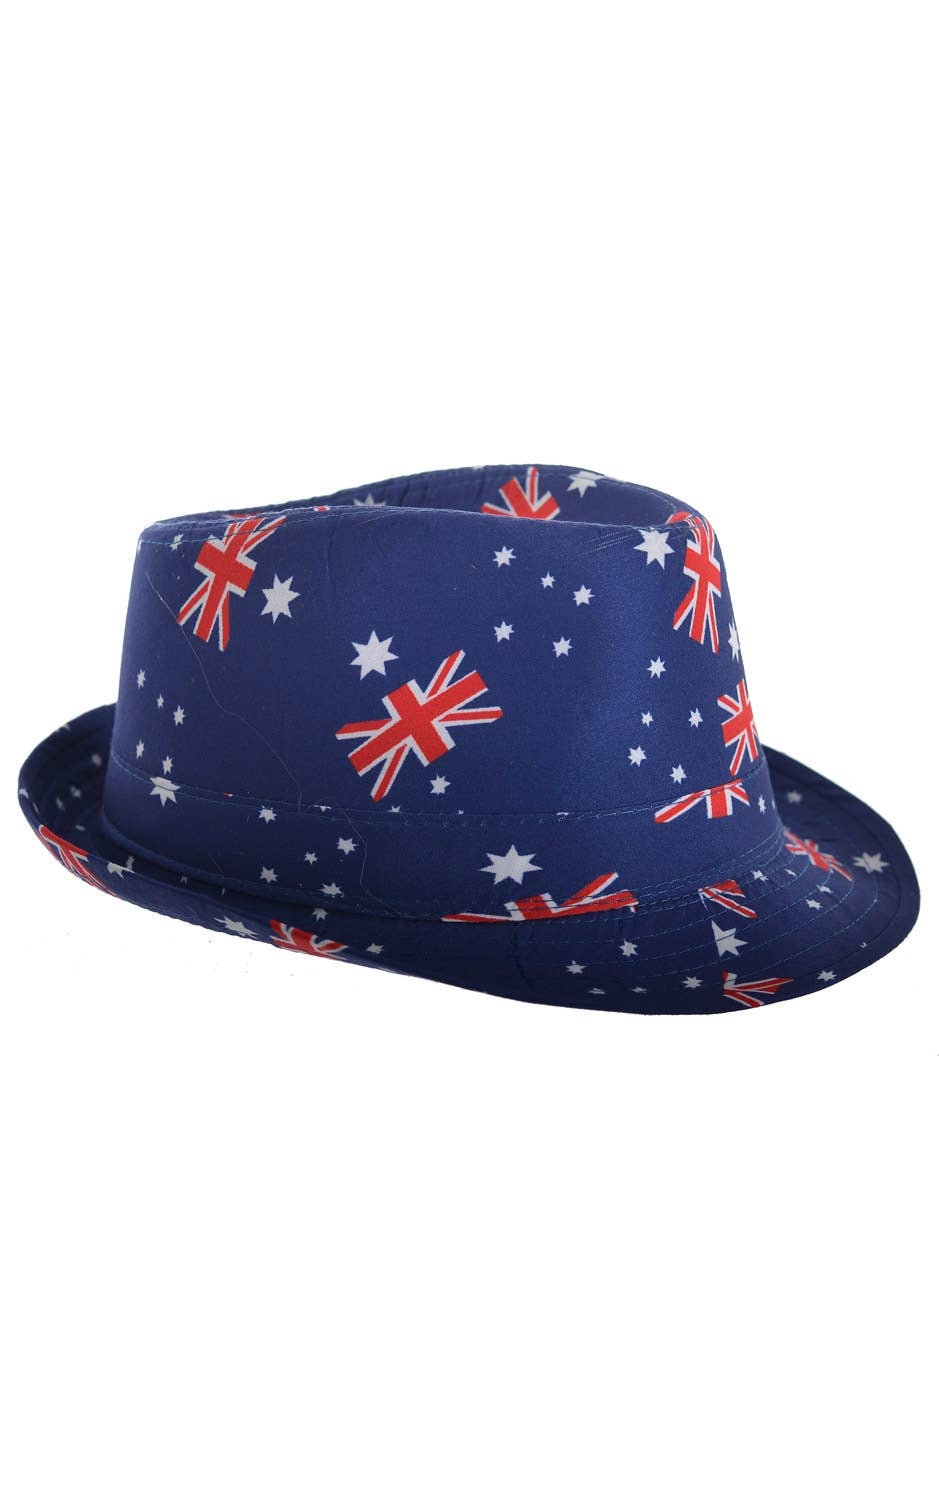 Aussie day hat Fedora hat Blue Australia day hat - Main Image